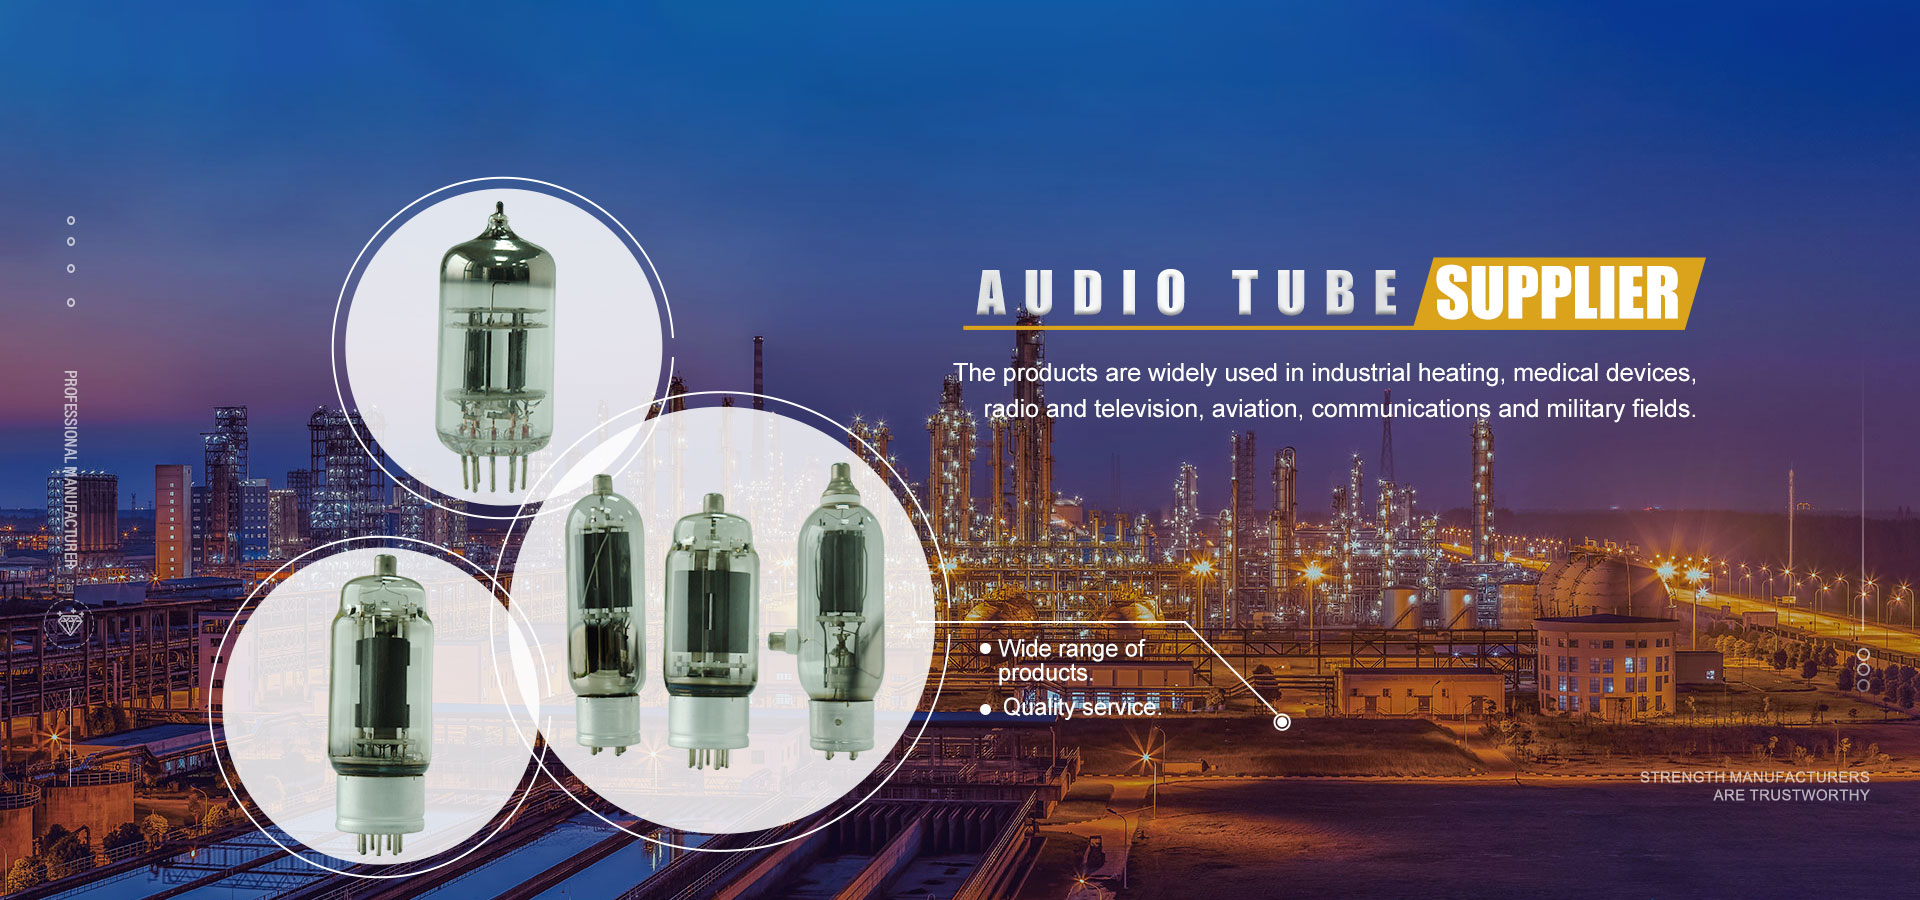 Fabricants et fournisseurs de tubes audio